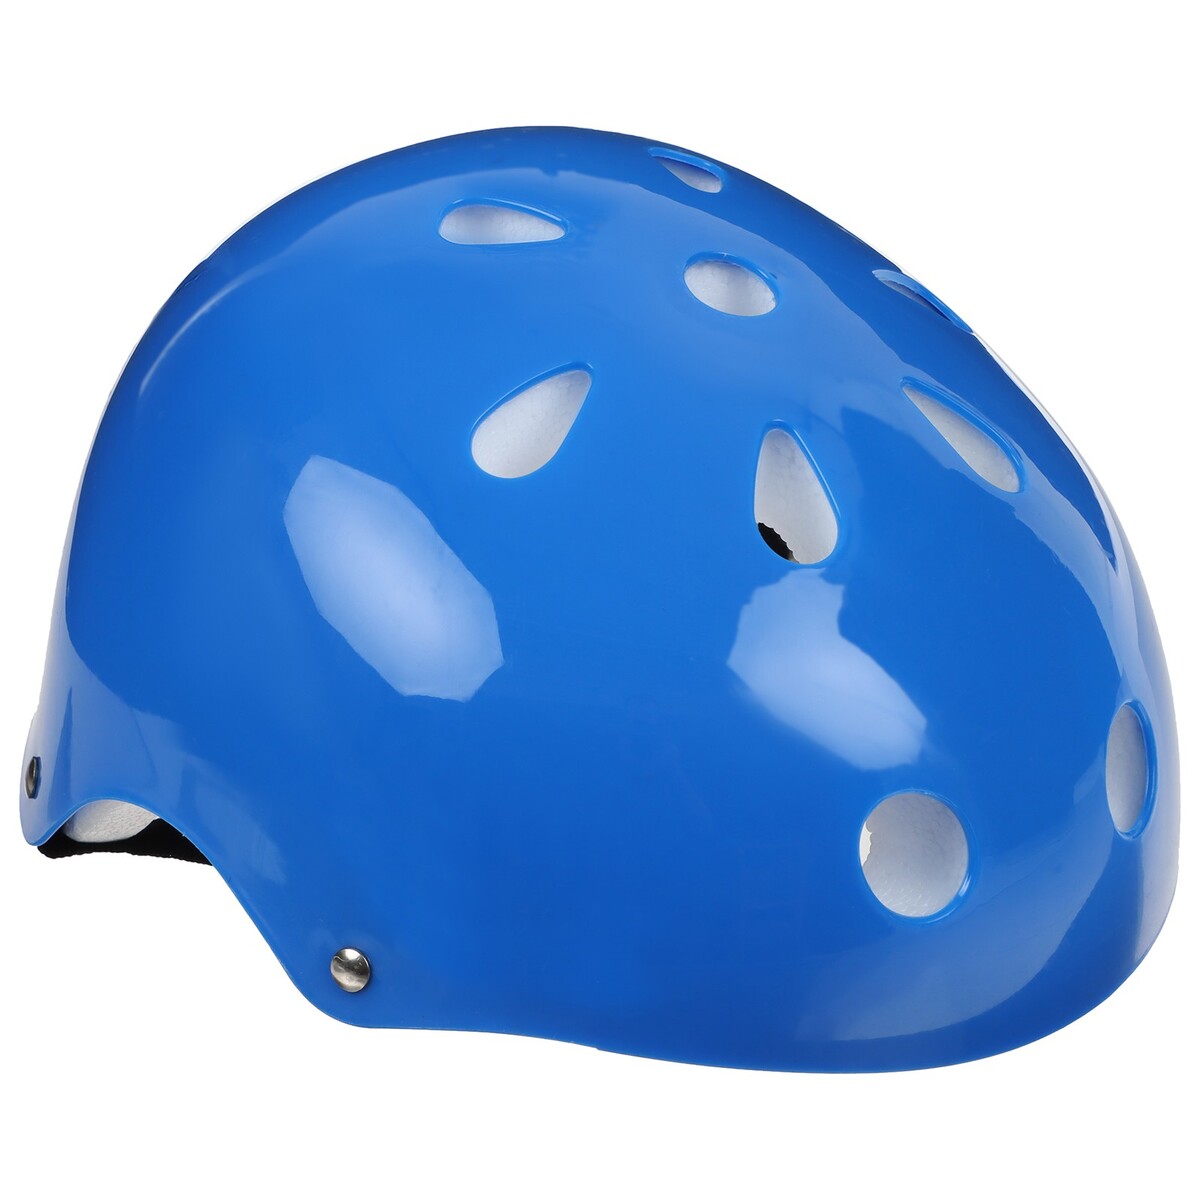 Шлем защитный детский onlytop, обхват 55 см, цвет синий шлем детский lassie р s цв фиолетовые полосы 718729 4921 s